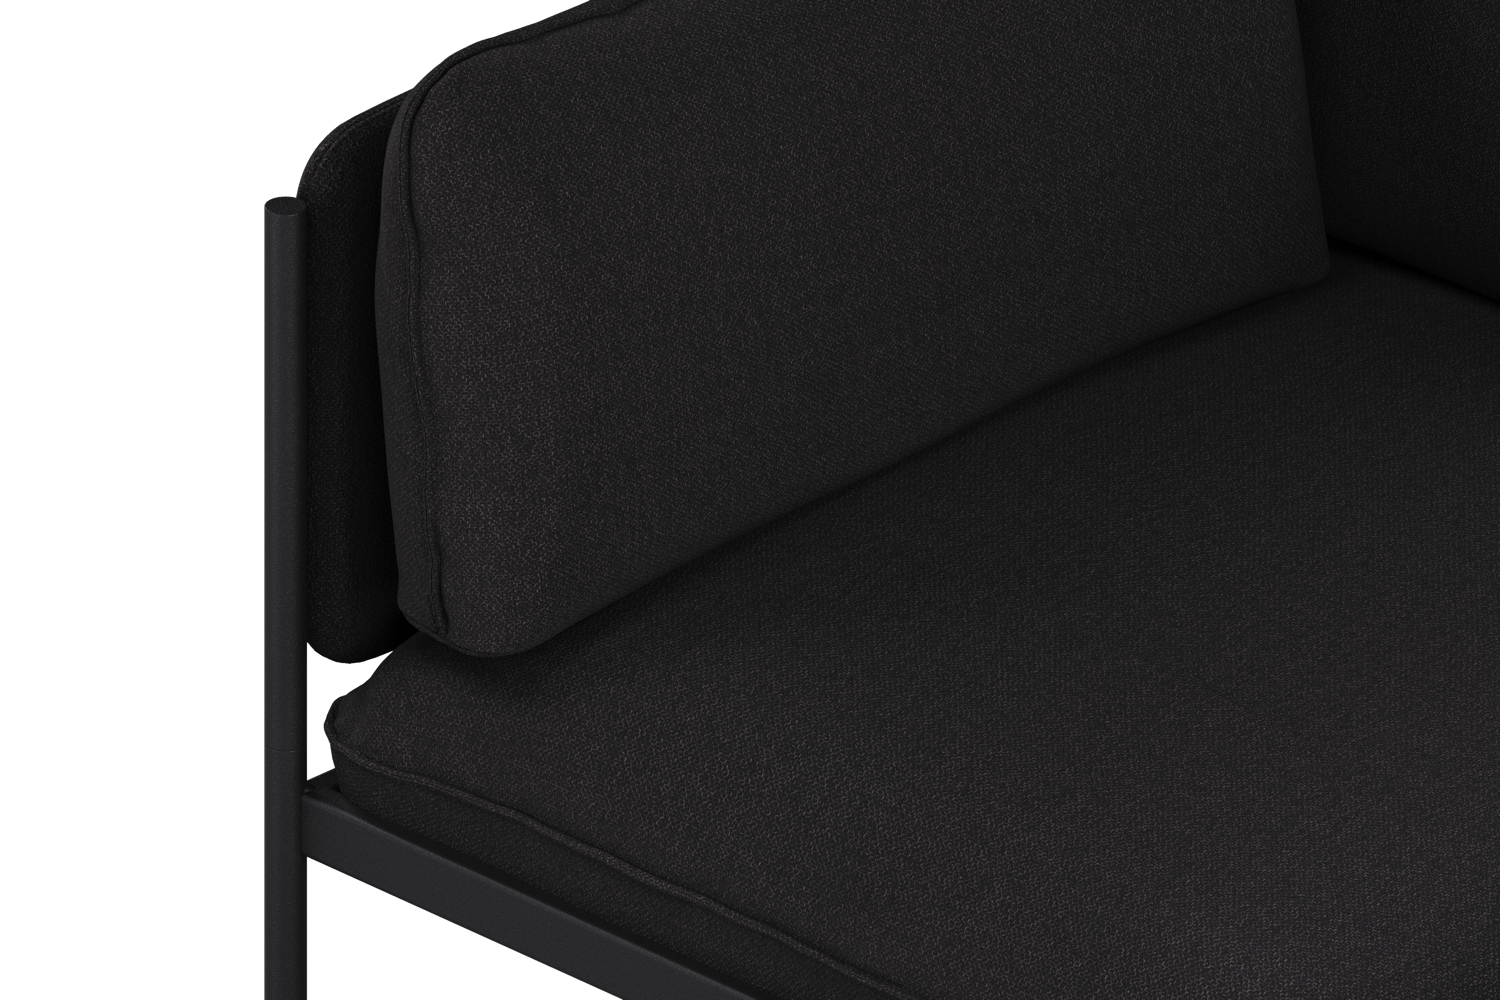 Toom Modular Sofa 4-Sitzer Konfiguration 2b in Graphite Black  präsentiert im Onlineshop von KAQTU Design AG. Ecksofa links ist von Noo.ma